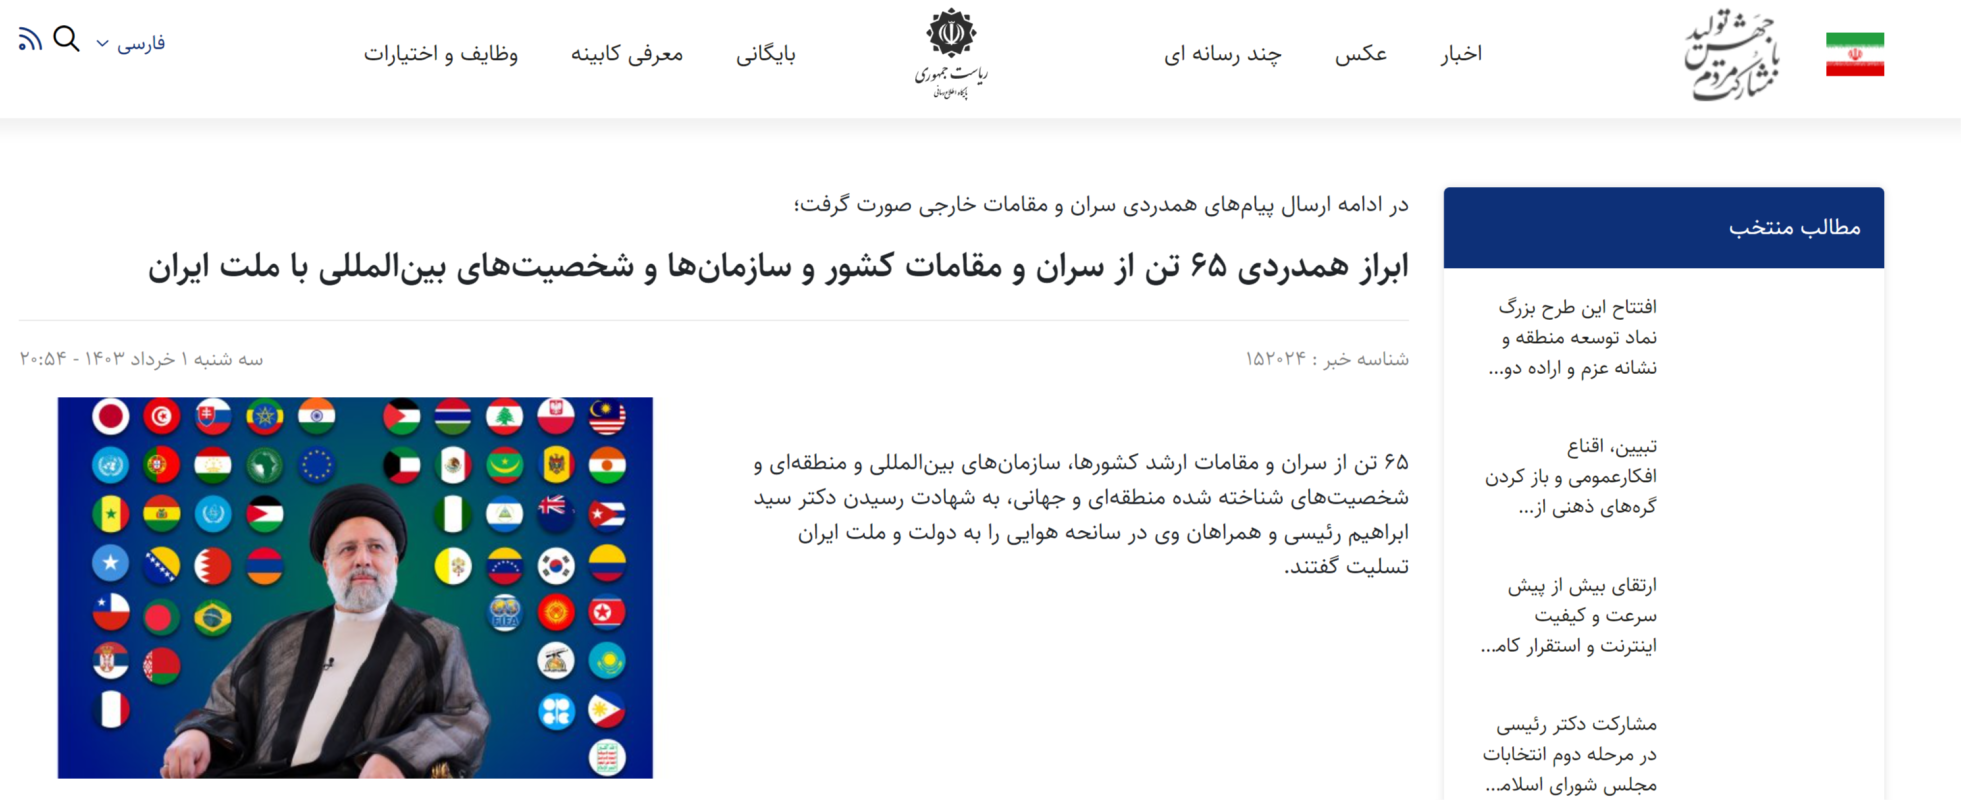 İran'ın 'Türk bayrağı' çelişkisi: Farsça Türkiye'yi görmezden gelip İngilizce arayüze Osmanlı bayrağını koydular